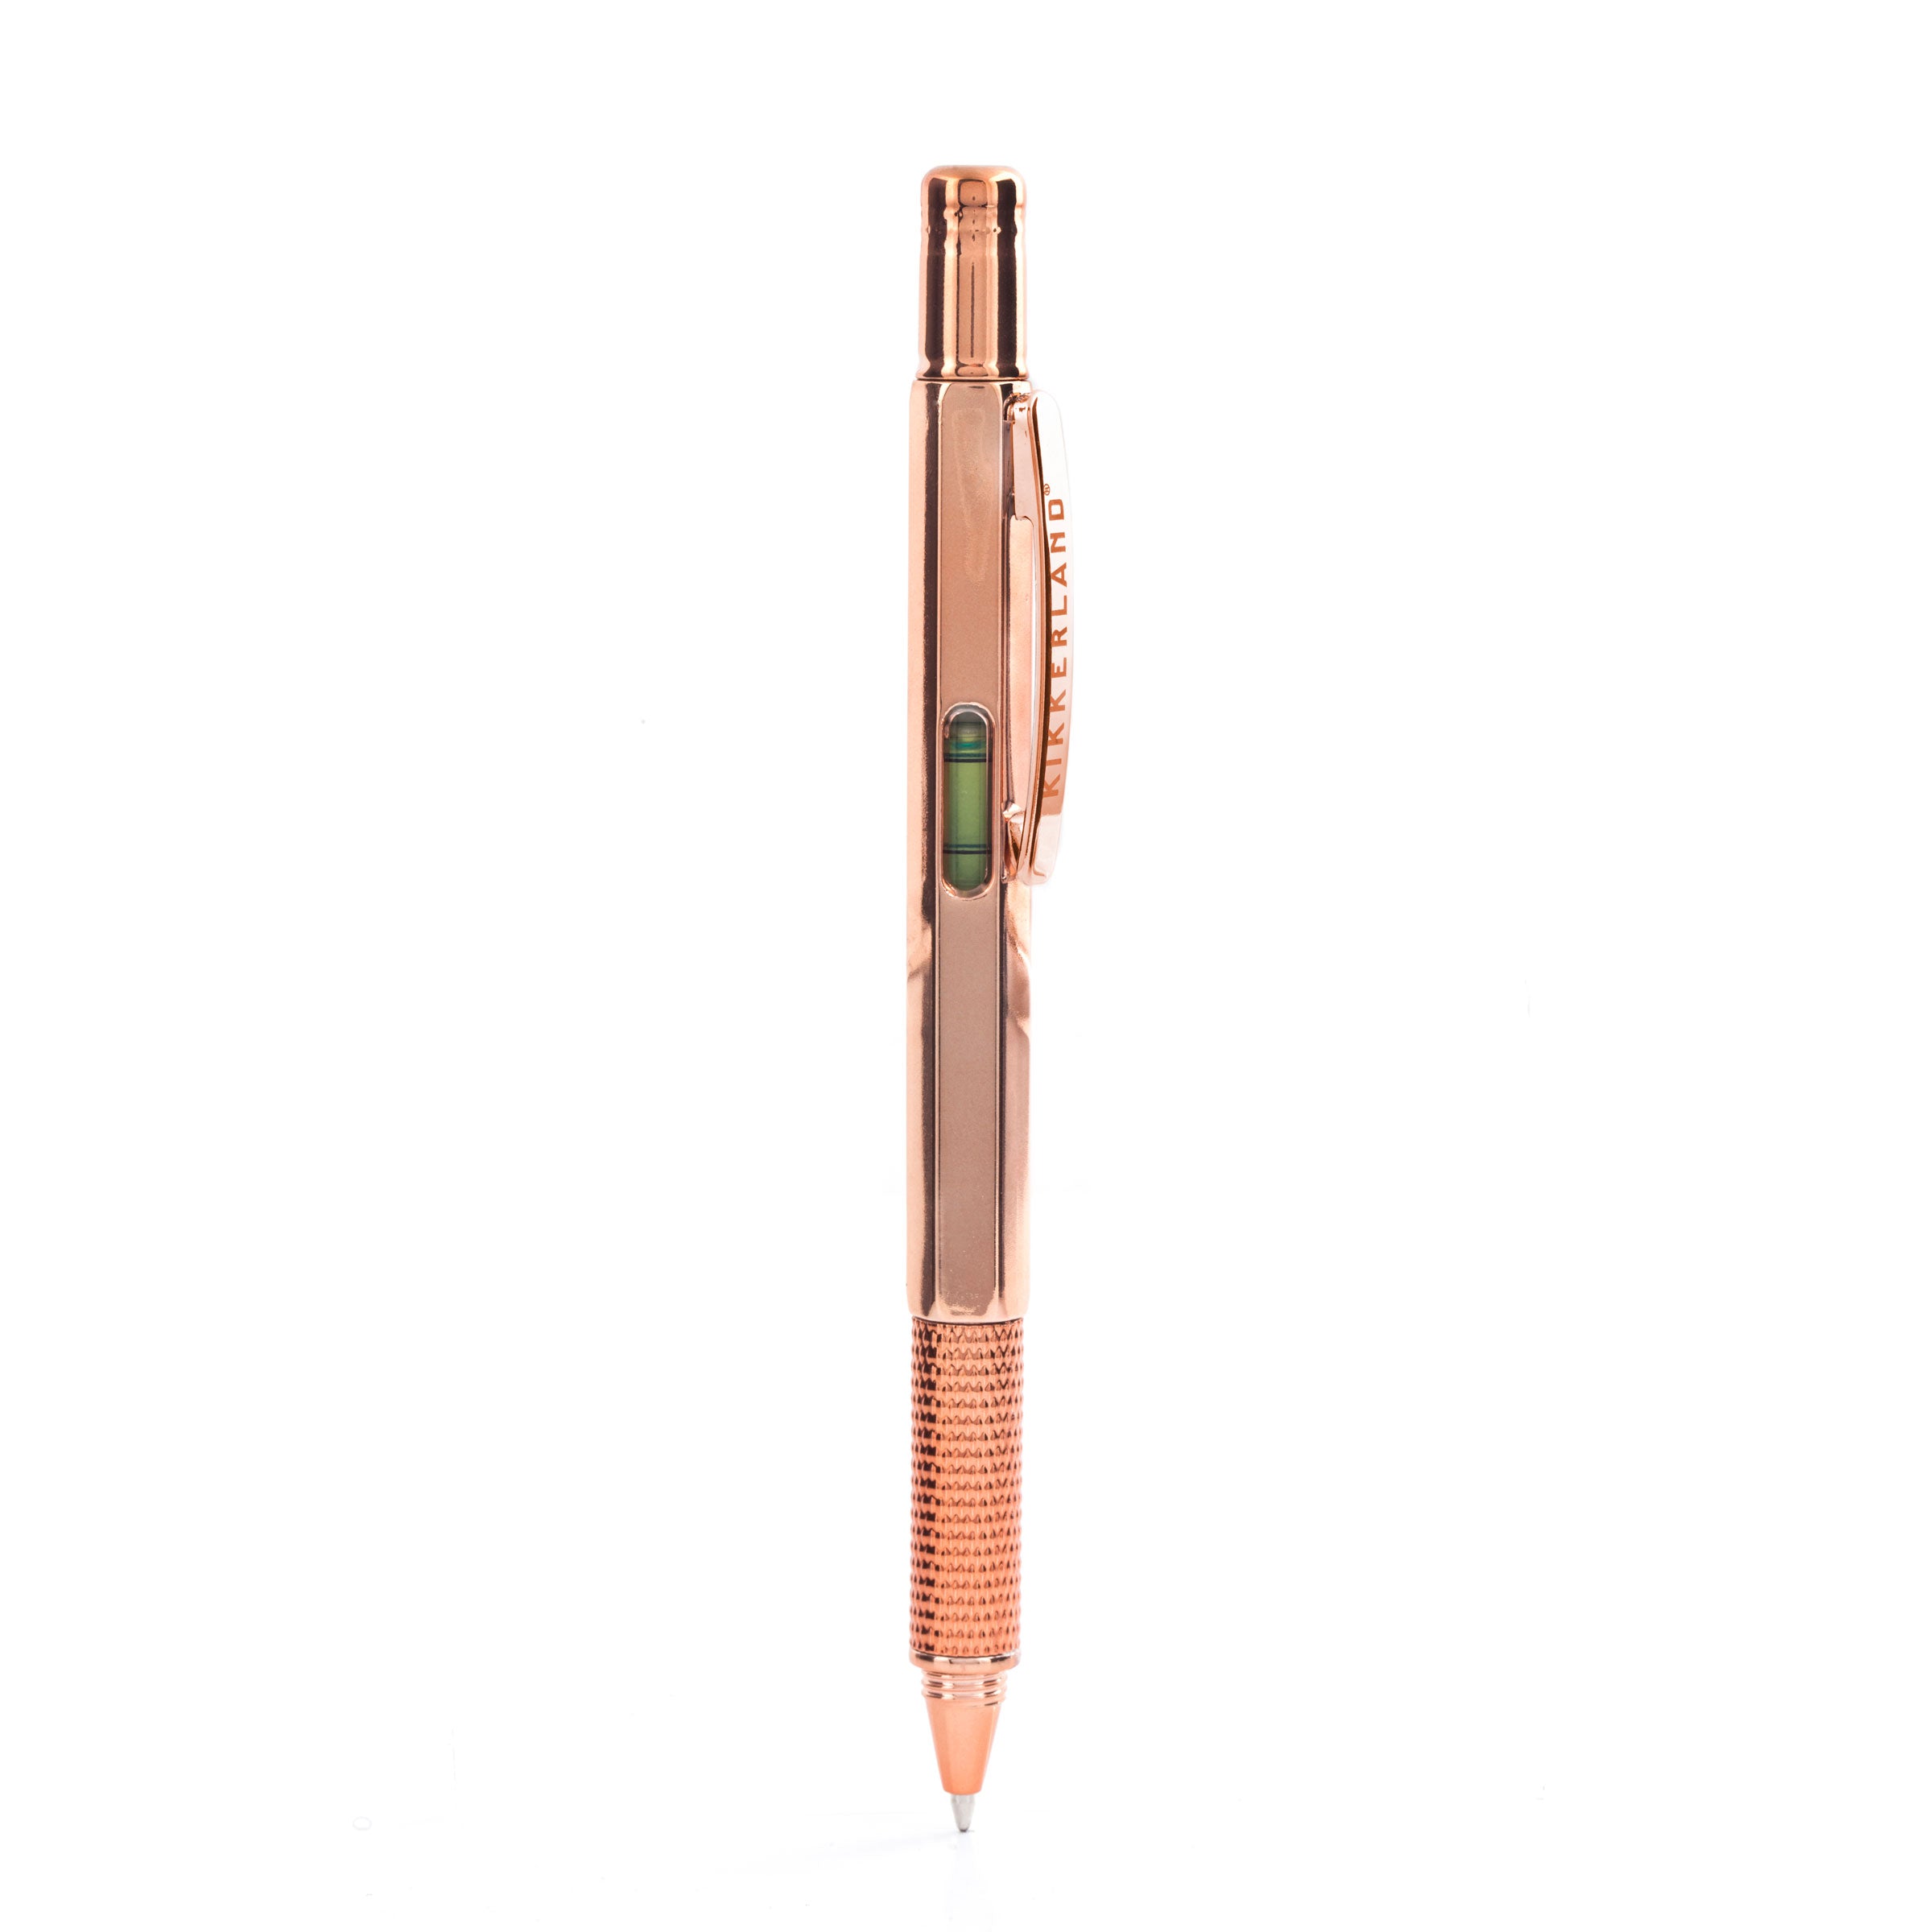 Feather Gel Pen – Kikkerland Design Inc